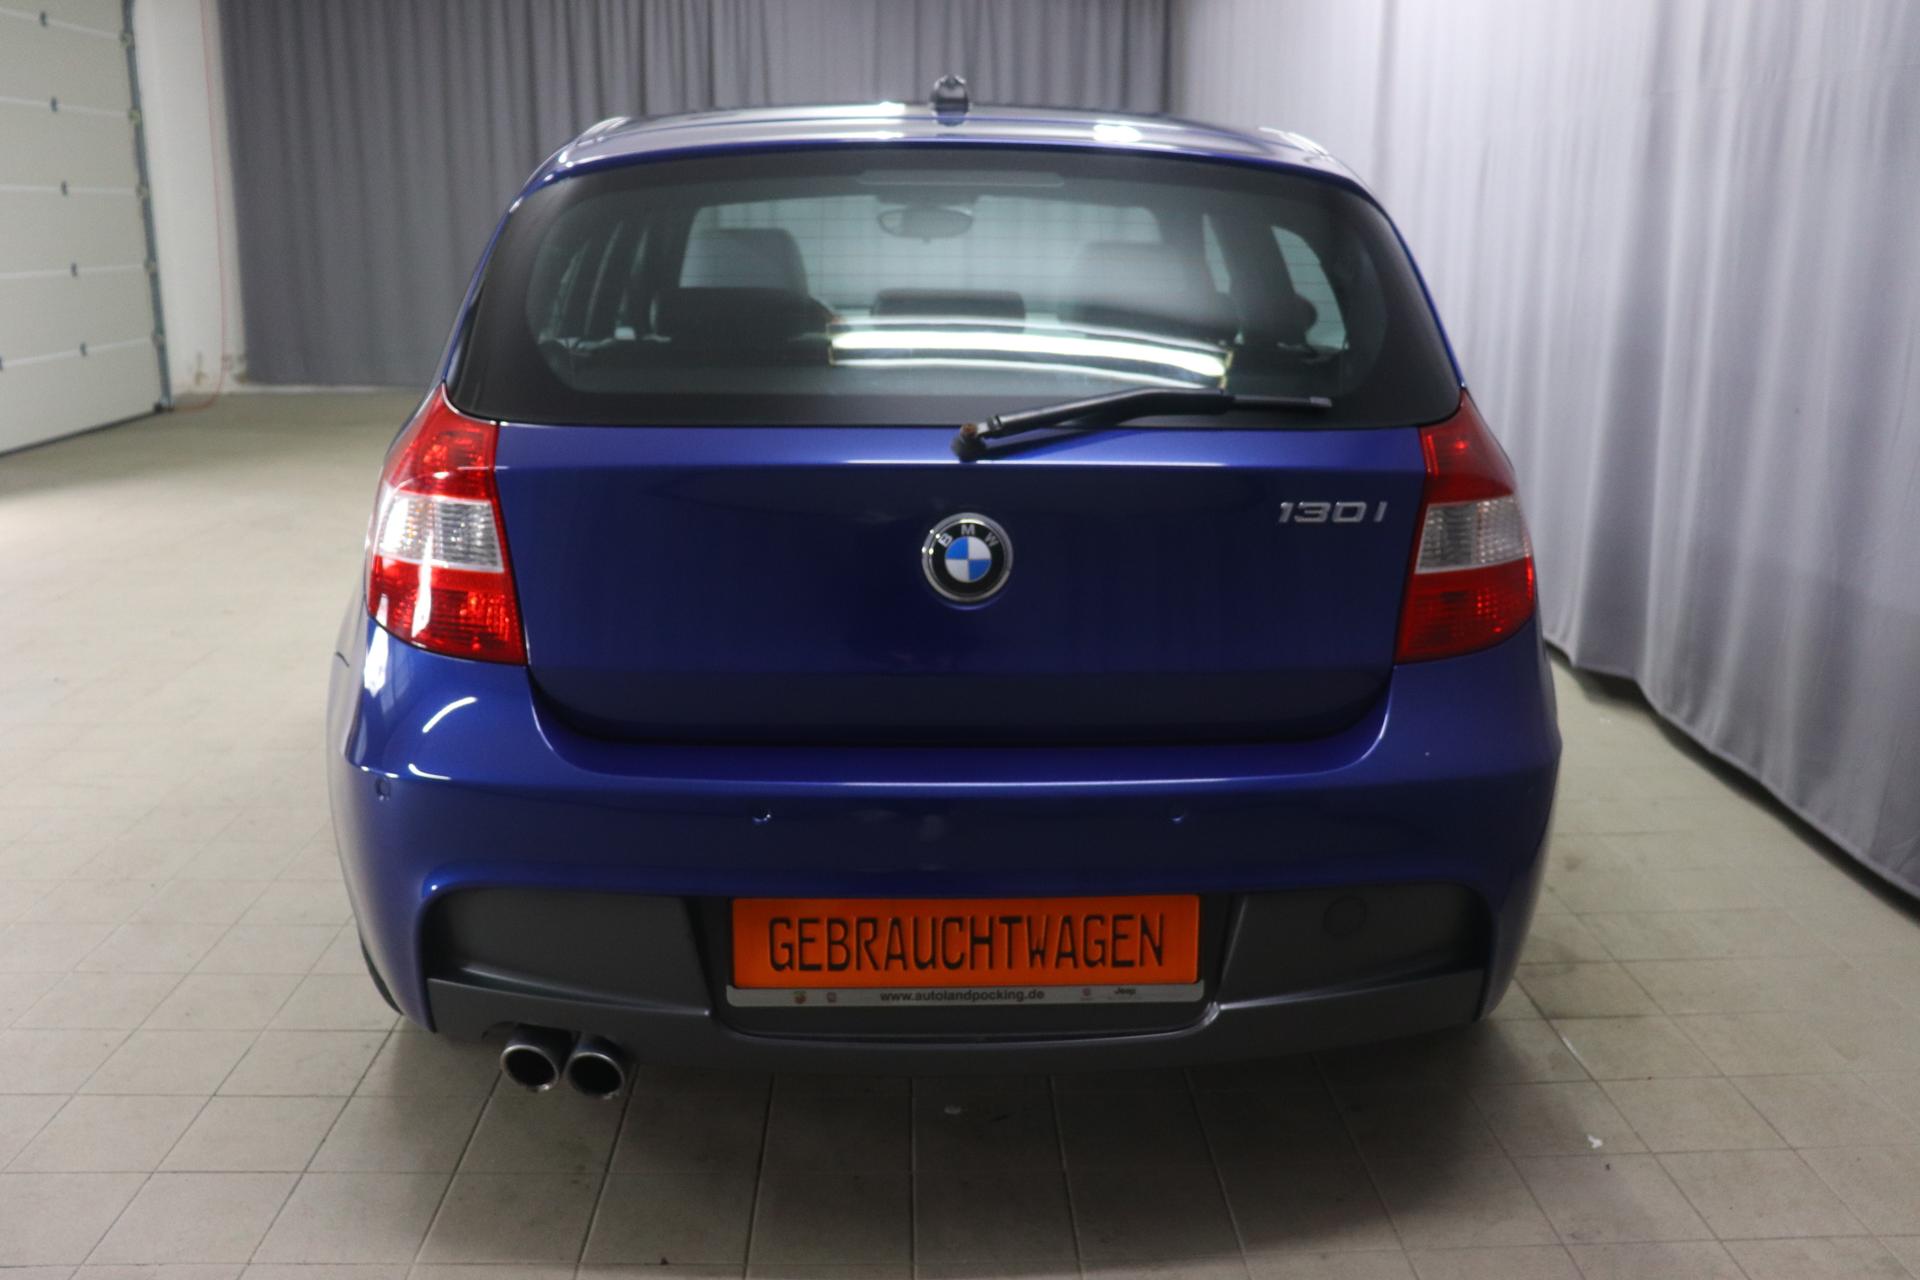 BMW 1er 130i 3.0 195kW 6-Zylinder, Panoramadach, Klimaautomatik